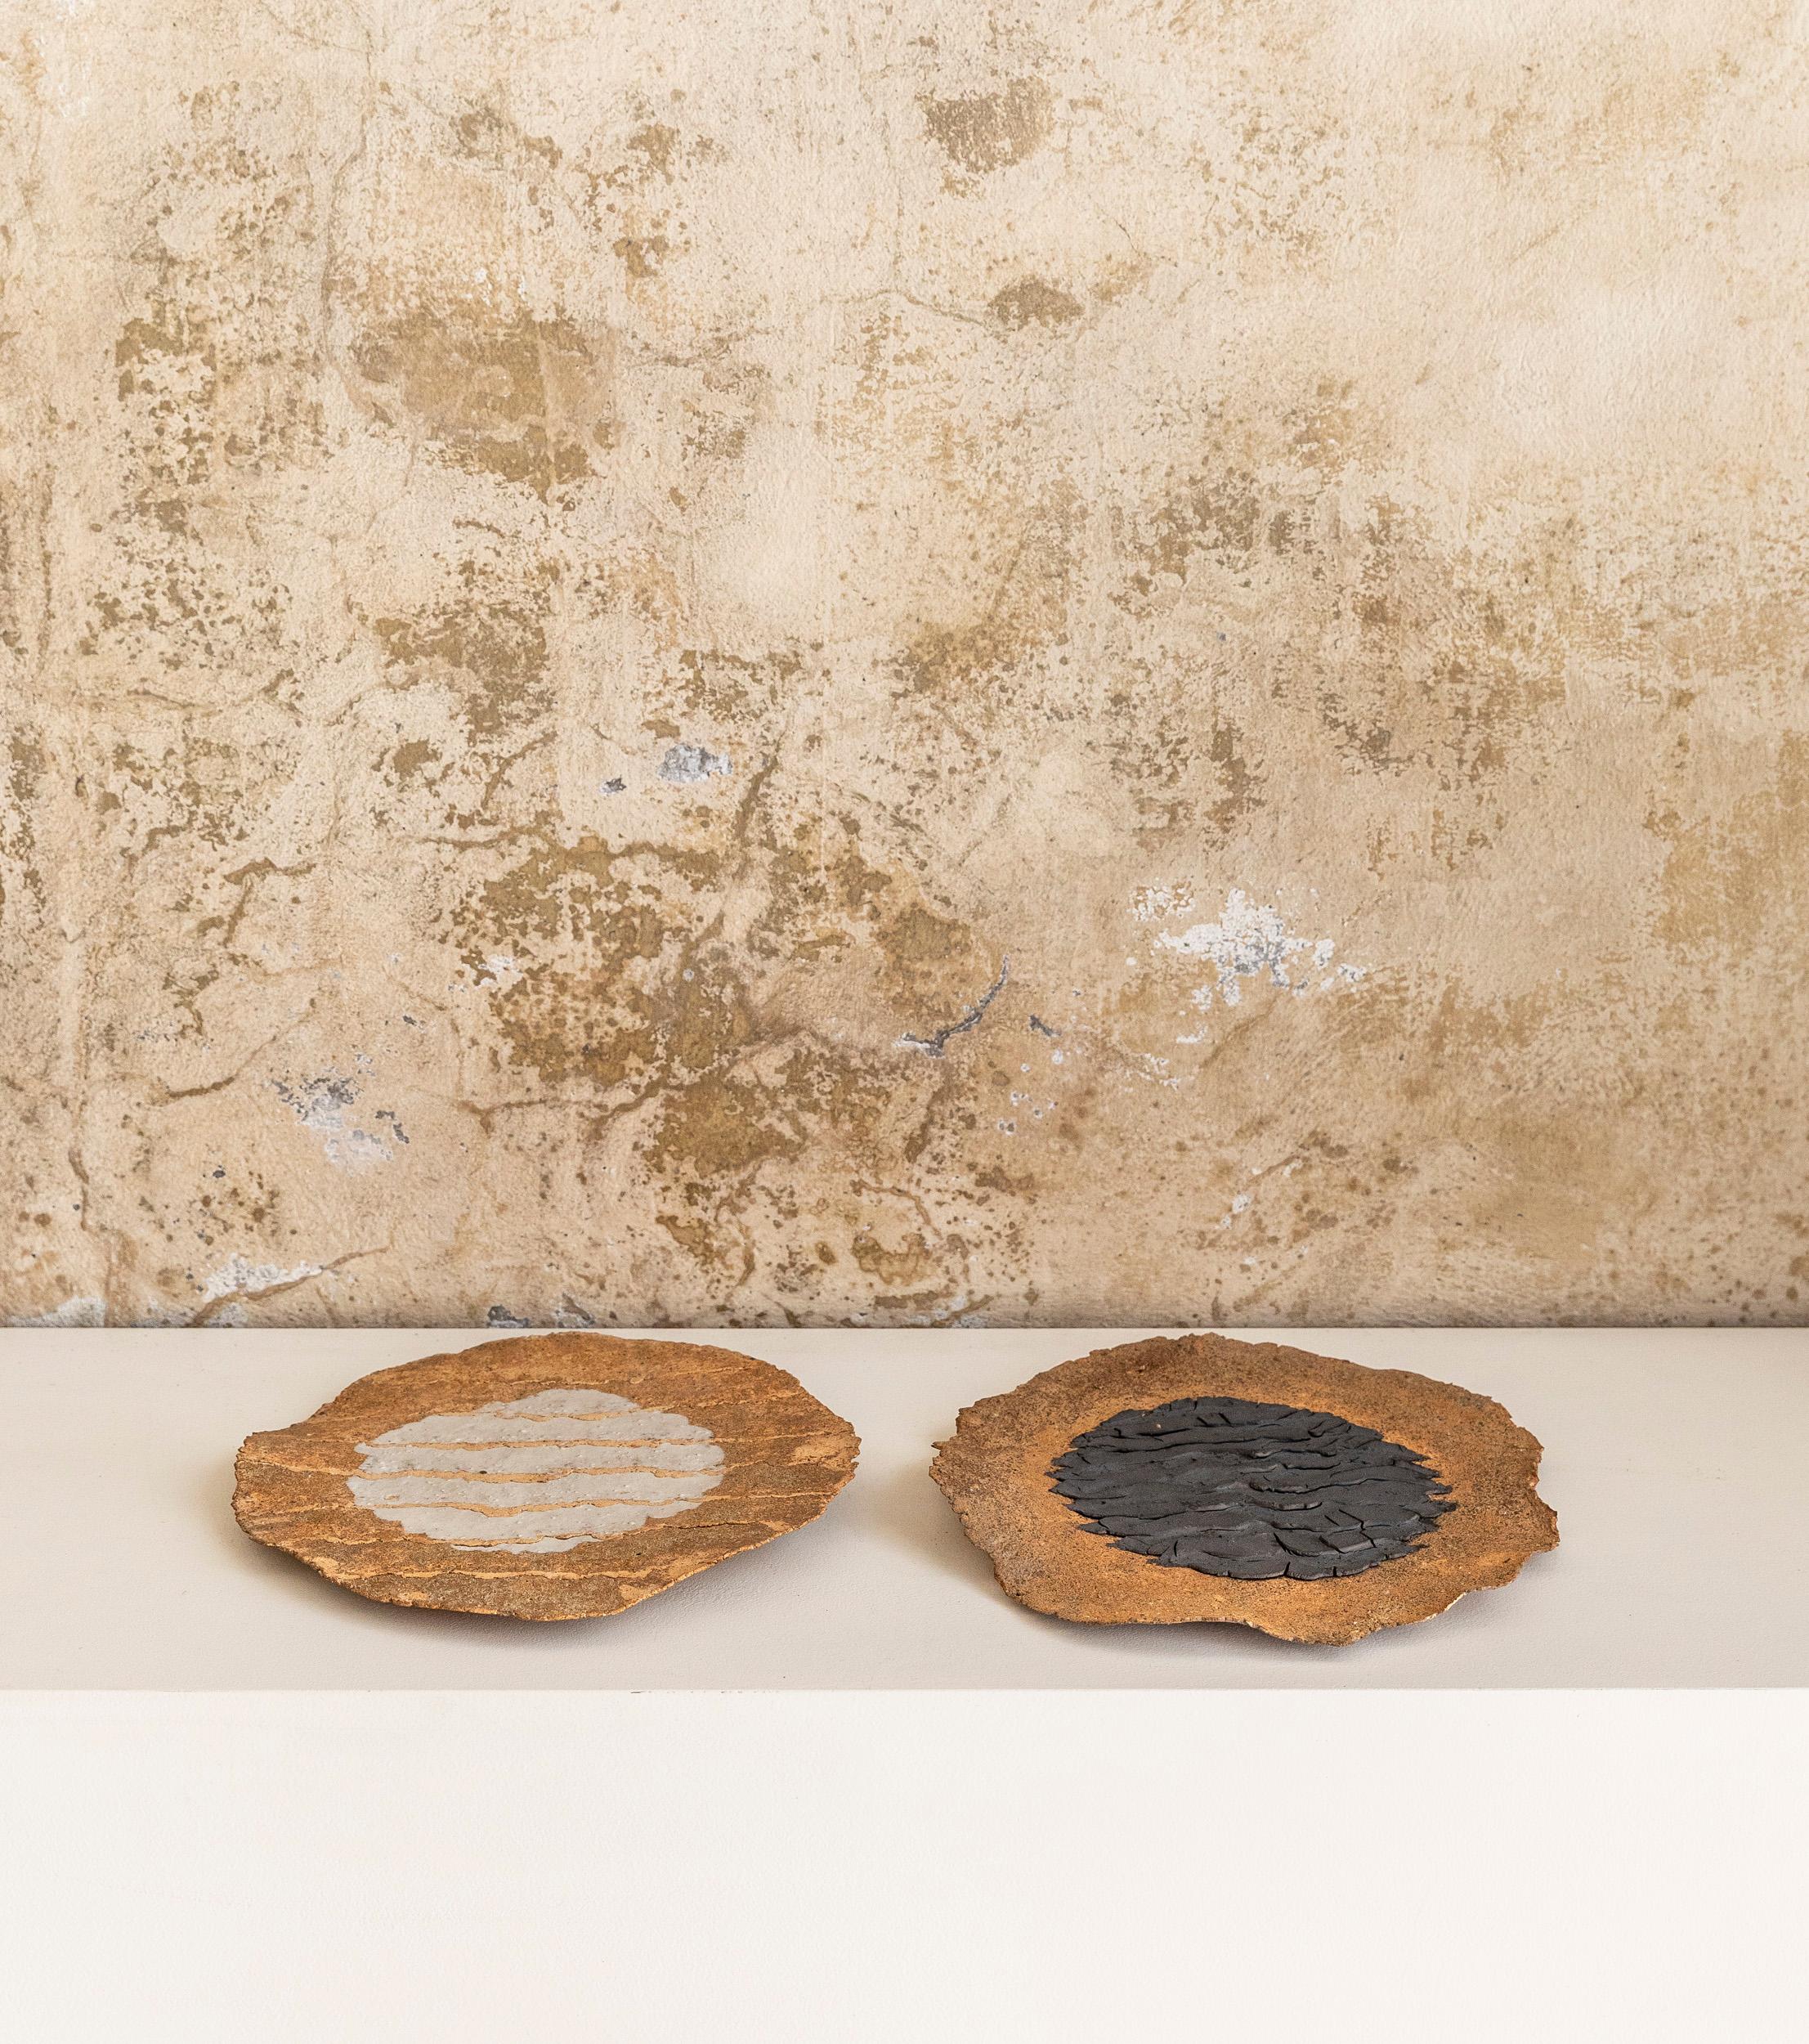 Seltenes Paar von Kunstwerken, die Tony Franks zugeschrieben werden, realisiert in feuerfestem und Oxid-Eisen - Malaga. 

Tony Franks wurde 1940 in Birmingham, England, geboren.
Er studierte am Wolverhampton College of Art und Keramik, am Cardiff